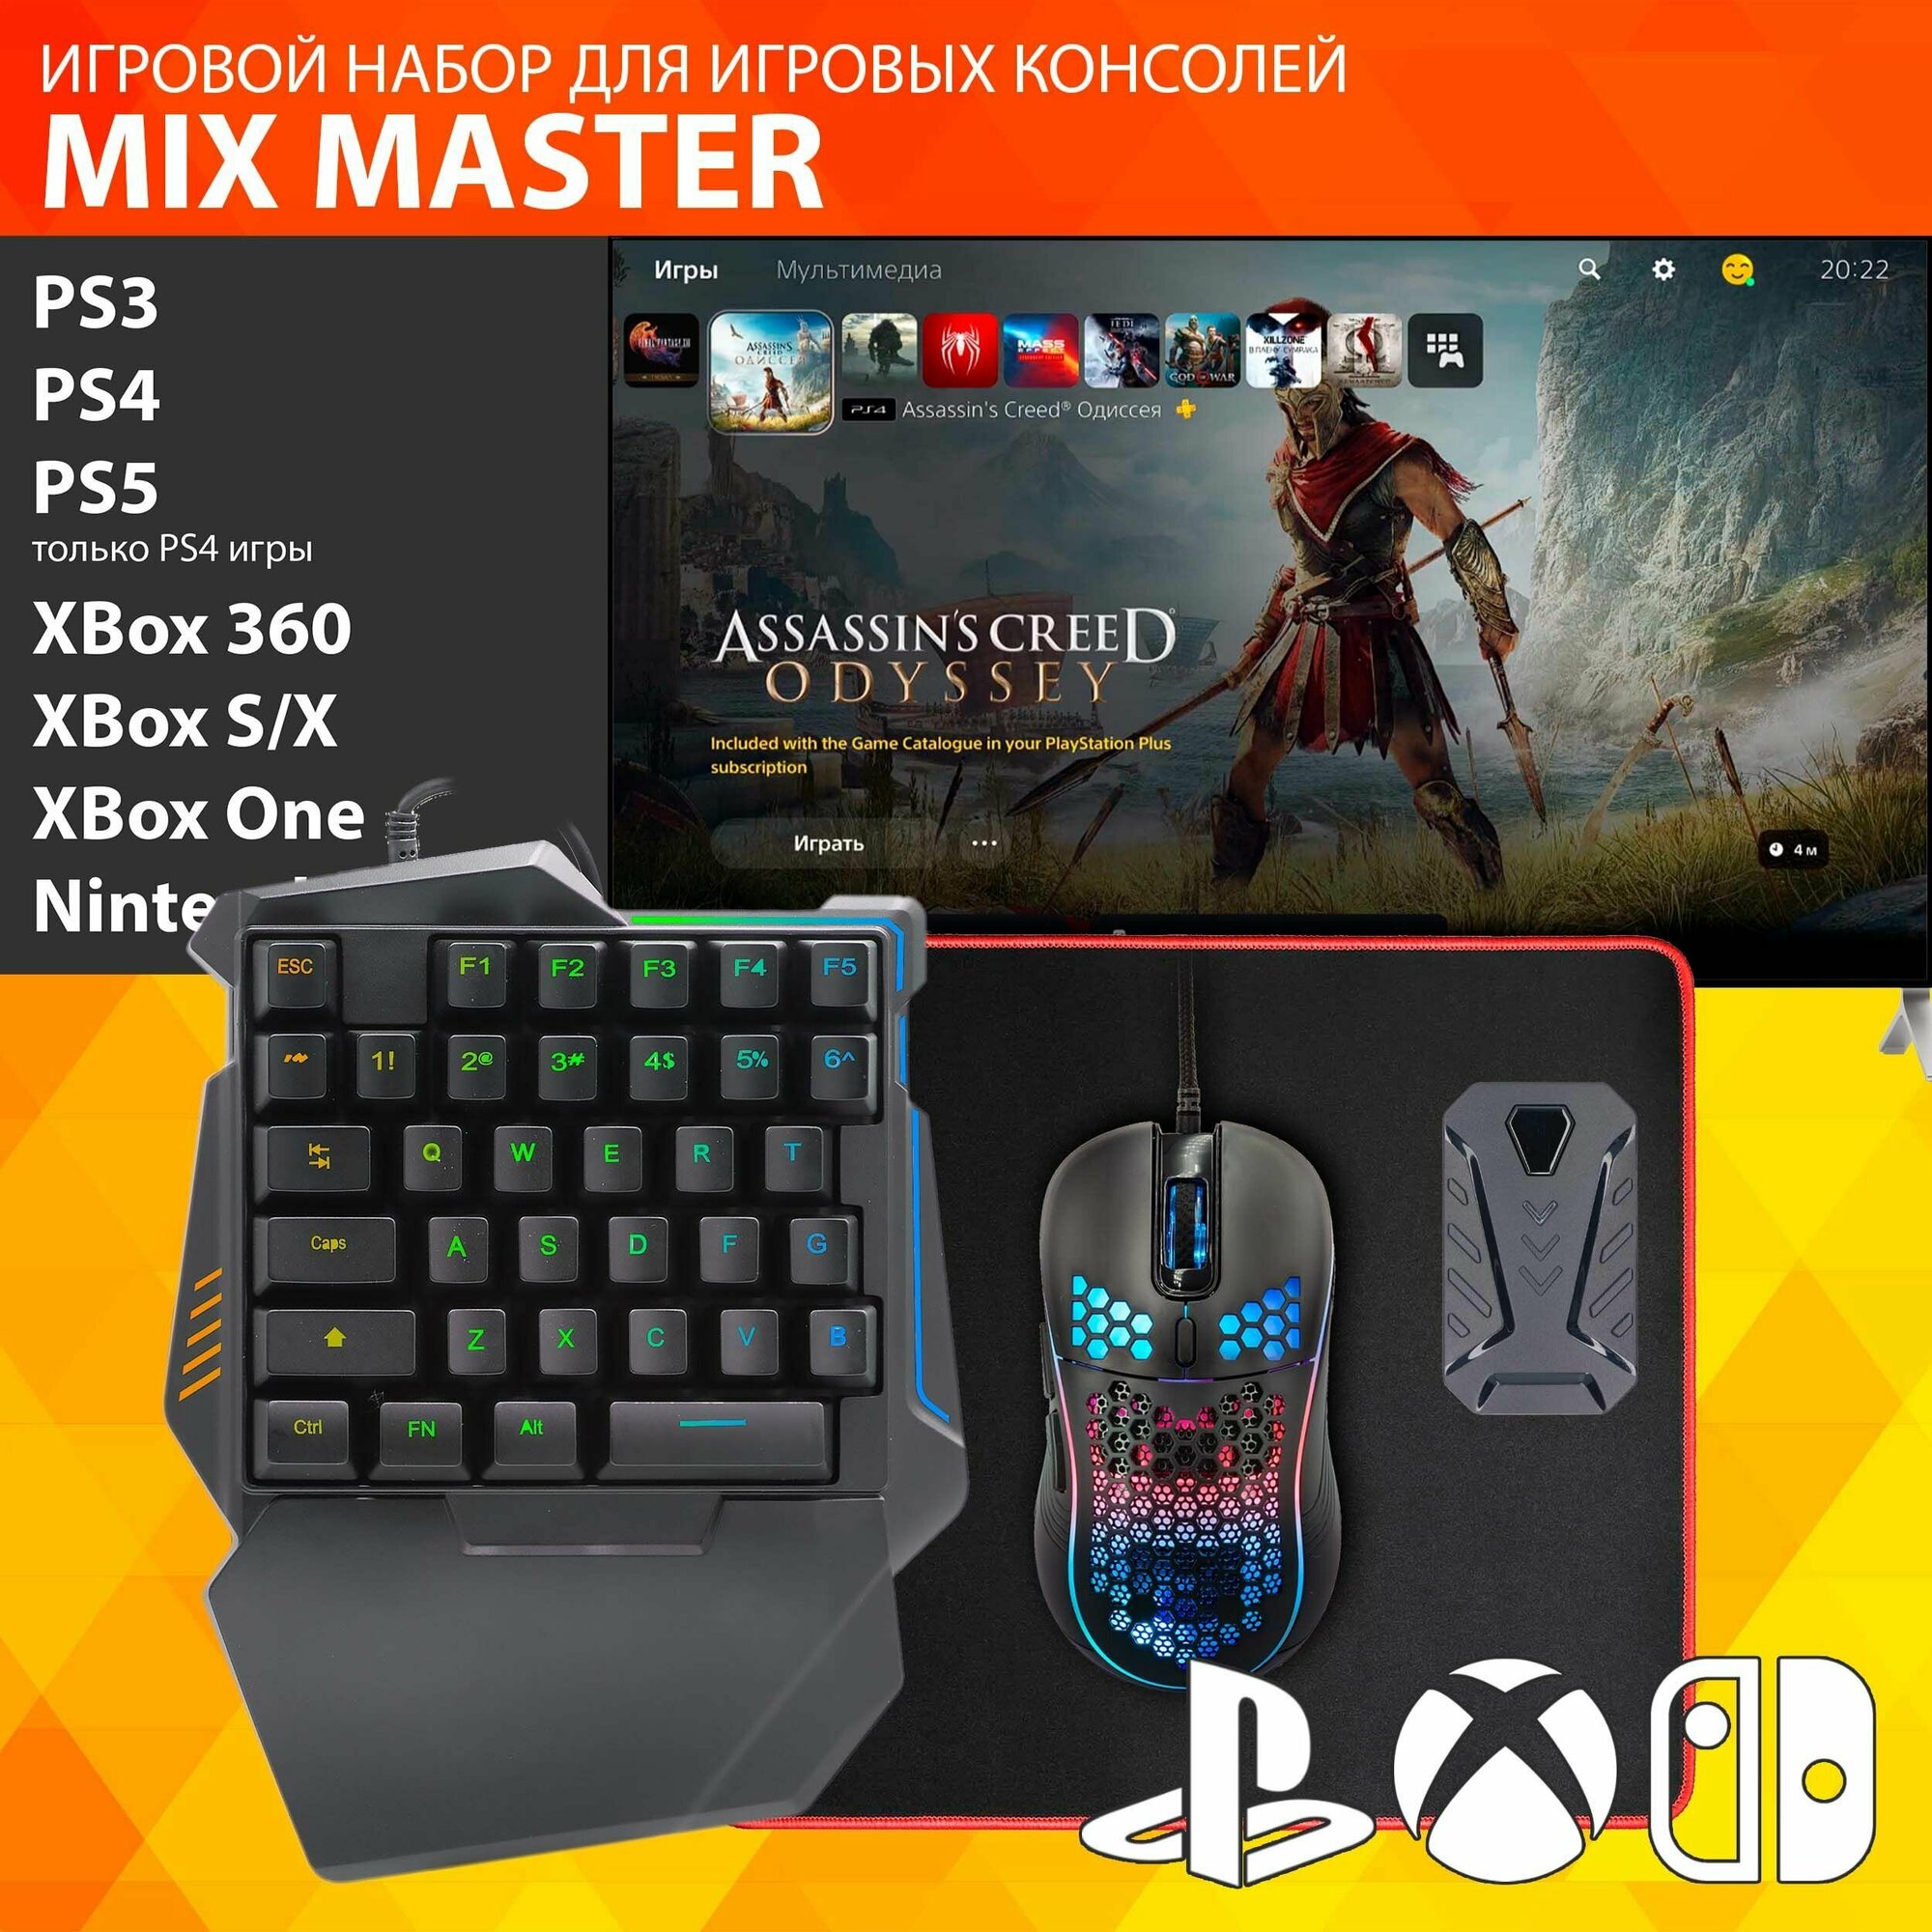 GAMWING MIX Master - Игровой набор для игры на PS3 PS4 XBox Nintendo Switch PS5 только игры для PS4